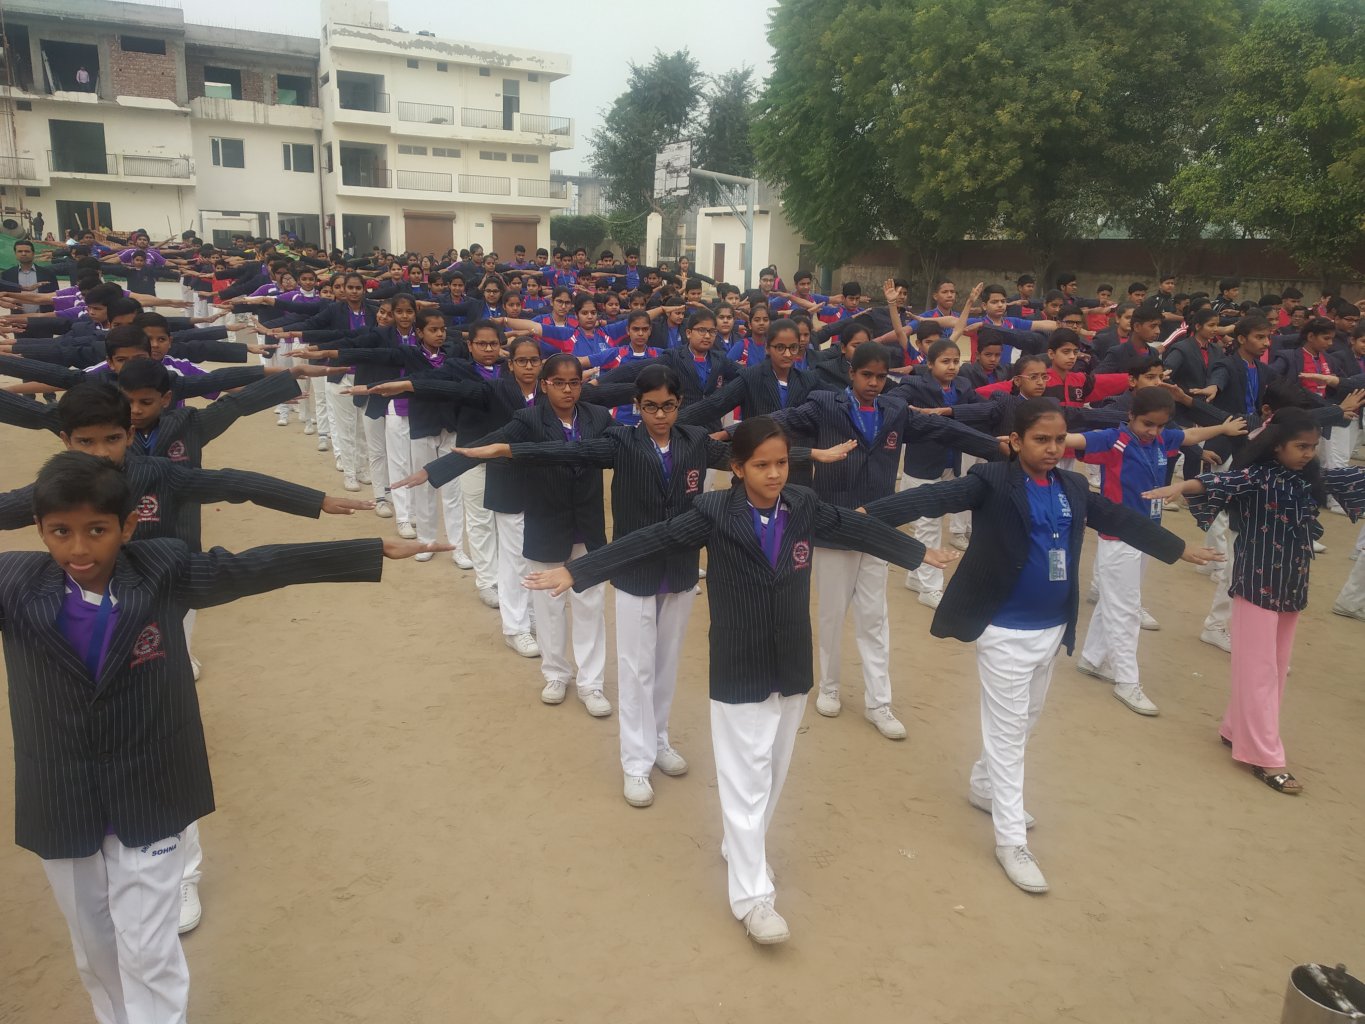 FIT INDIA SCHOOL WEEK 2019